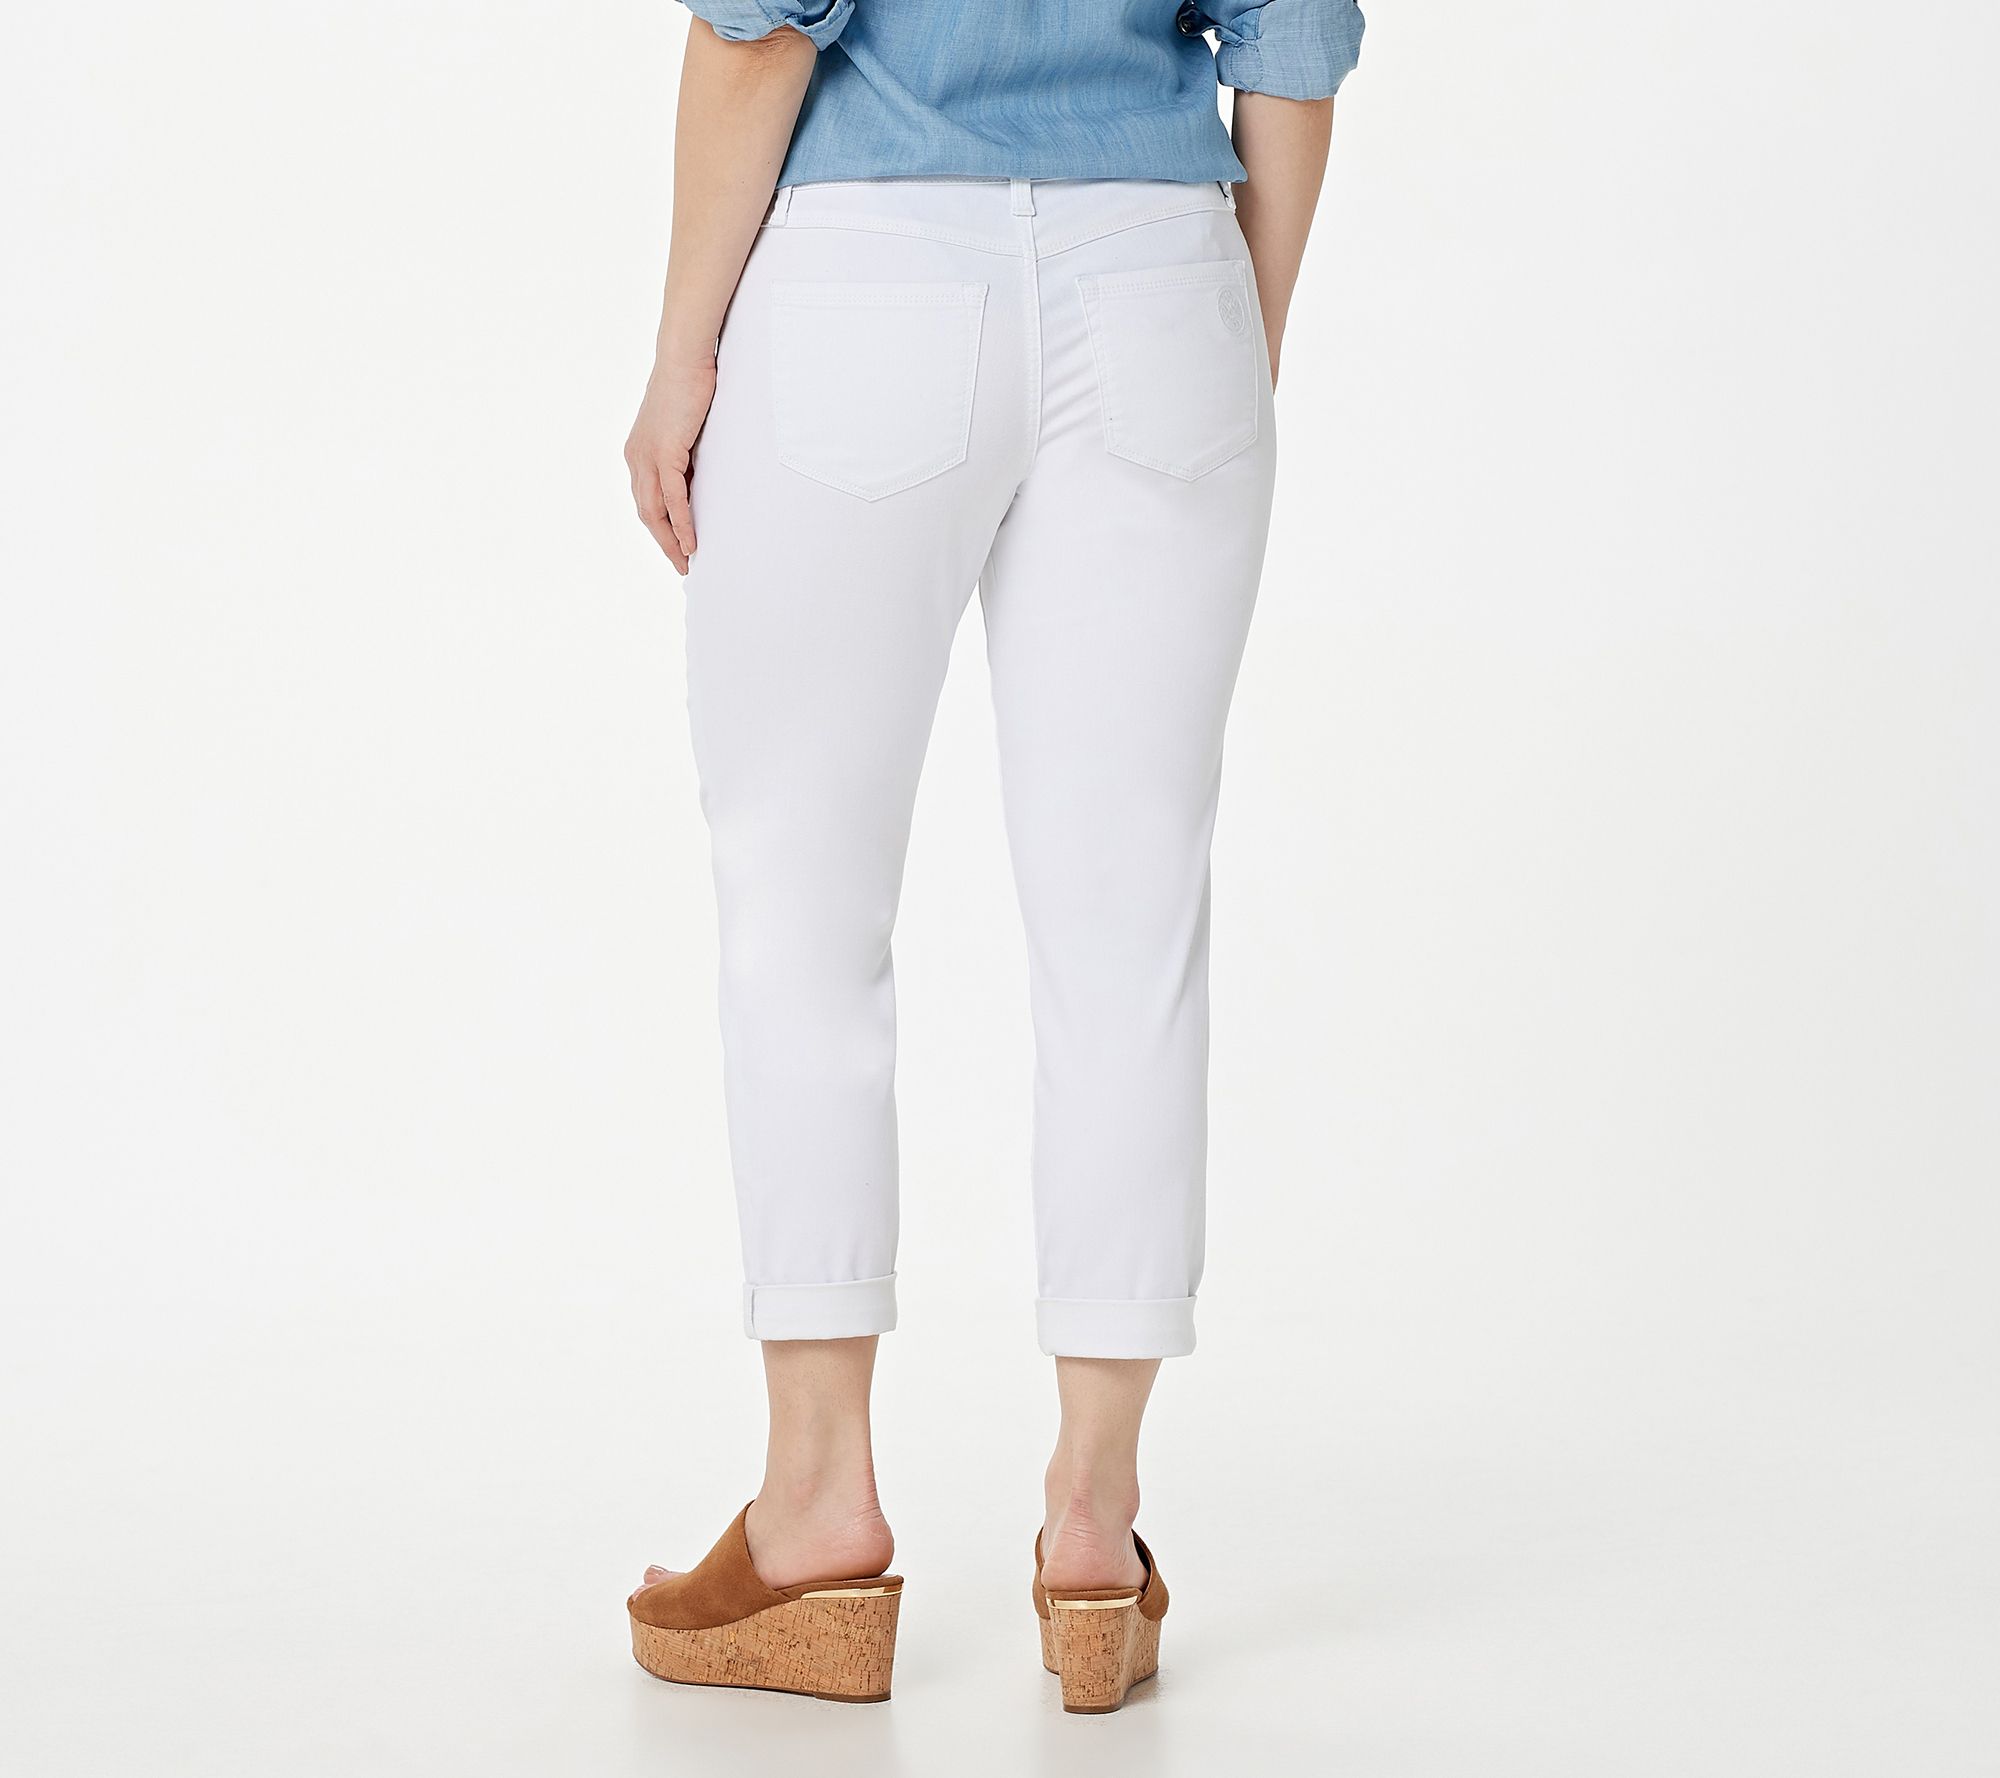 Laurie Felt Daisy Denim Girlfriend Crop Jeans- White - QVC.com